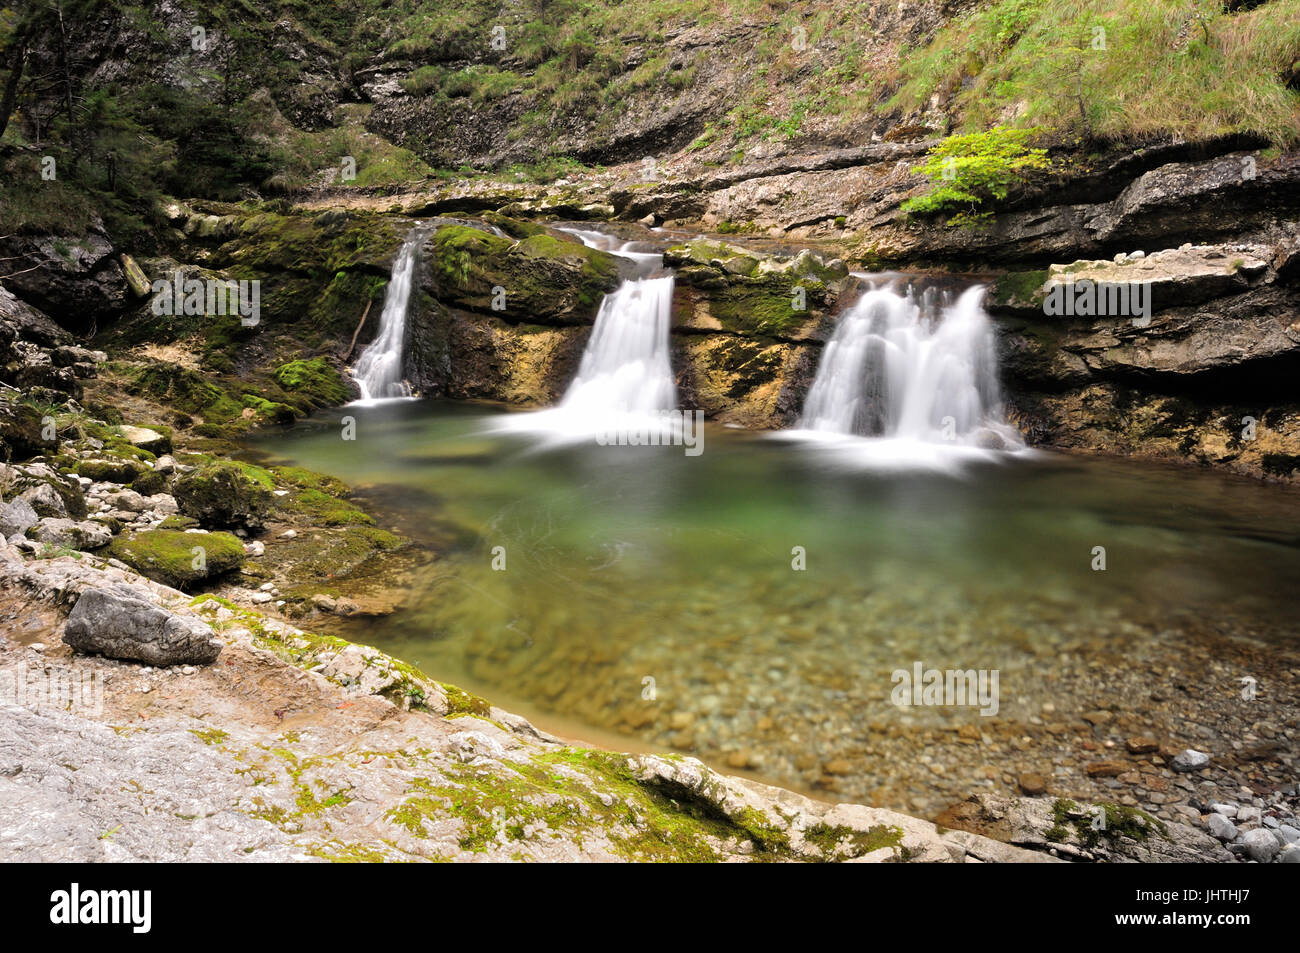 Trois petites chutes d'eau à un ruisseau de montagne dans les Alpes bavaroises près de Ruhpolding, en Allemagne et Autriche, Heutal, Unken Banque D'Images